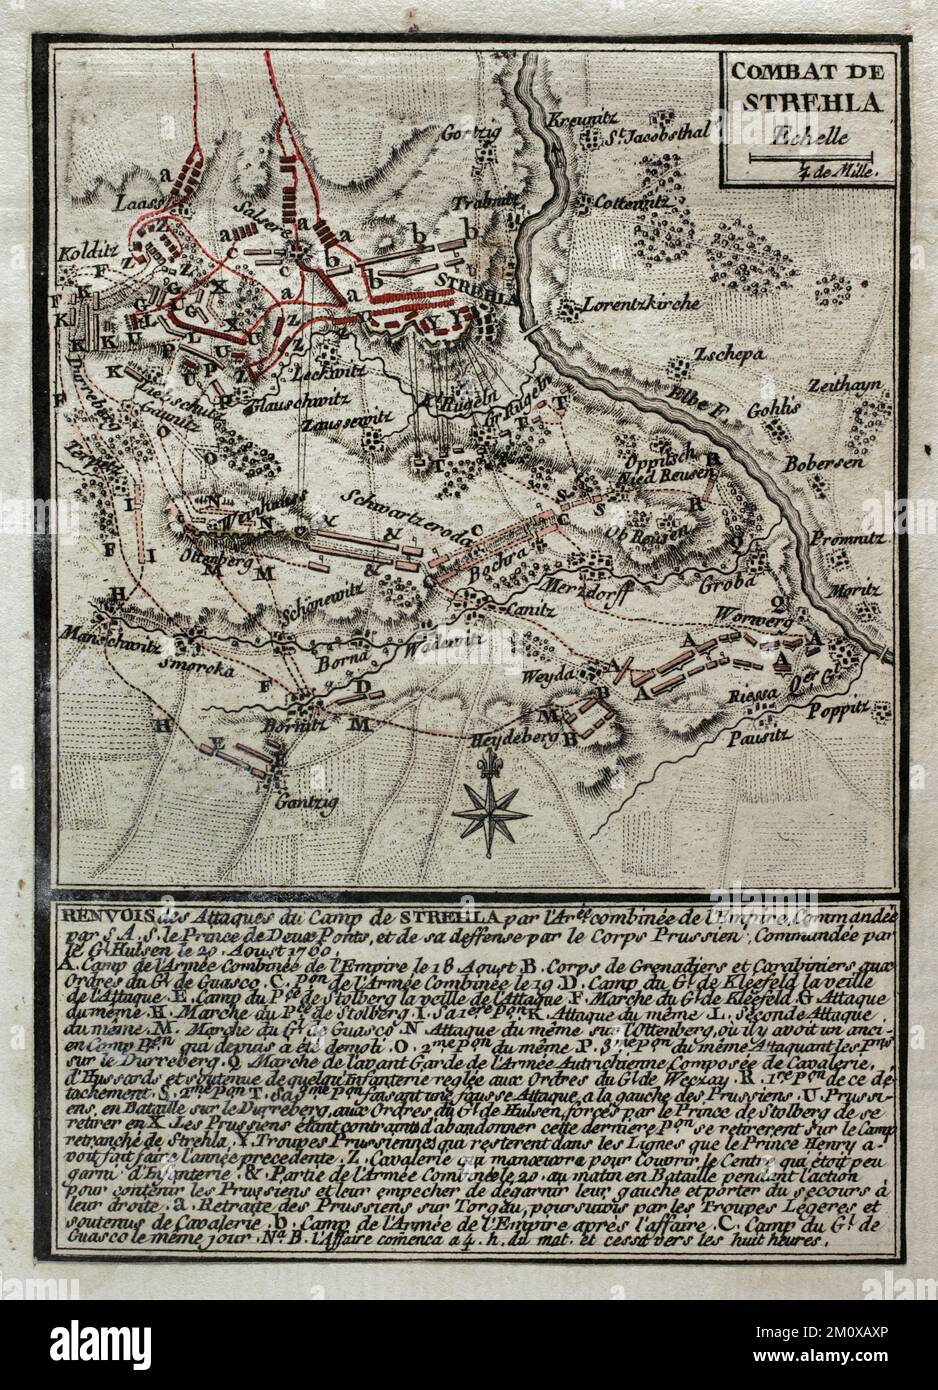 Guerre de sept ans (1756-1763). Troisième guerre de Silésie. Carte de la bataille de Strehla (20 août 1760). Saxe. L'armée prussienne, commandée par Johann Dietrich von Hulsen, a attaqué les lignes autrichiennes défendues par les troupes dirigées par Frederick Michael (comte Palatin de Zweibrucken). Les Prussiens ont réussi à surmonter les Autrichiens. Publié en 1765 par le cartographe Jean de Beaurain (1696-1771) comme illustration de sa Grande carte d'Allemagne, avec les événements qui ont eu lieu pendant la guerre de sept ans. Gravure et gravure. Édition française, 1765. Bibliothèque historique militaire de Barcelone (Biblioteca Hist Banque D'Images